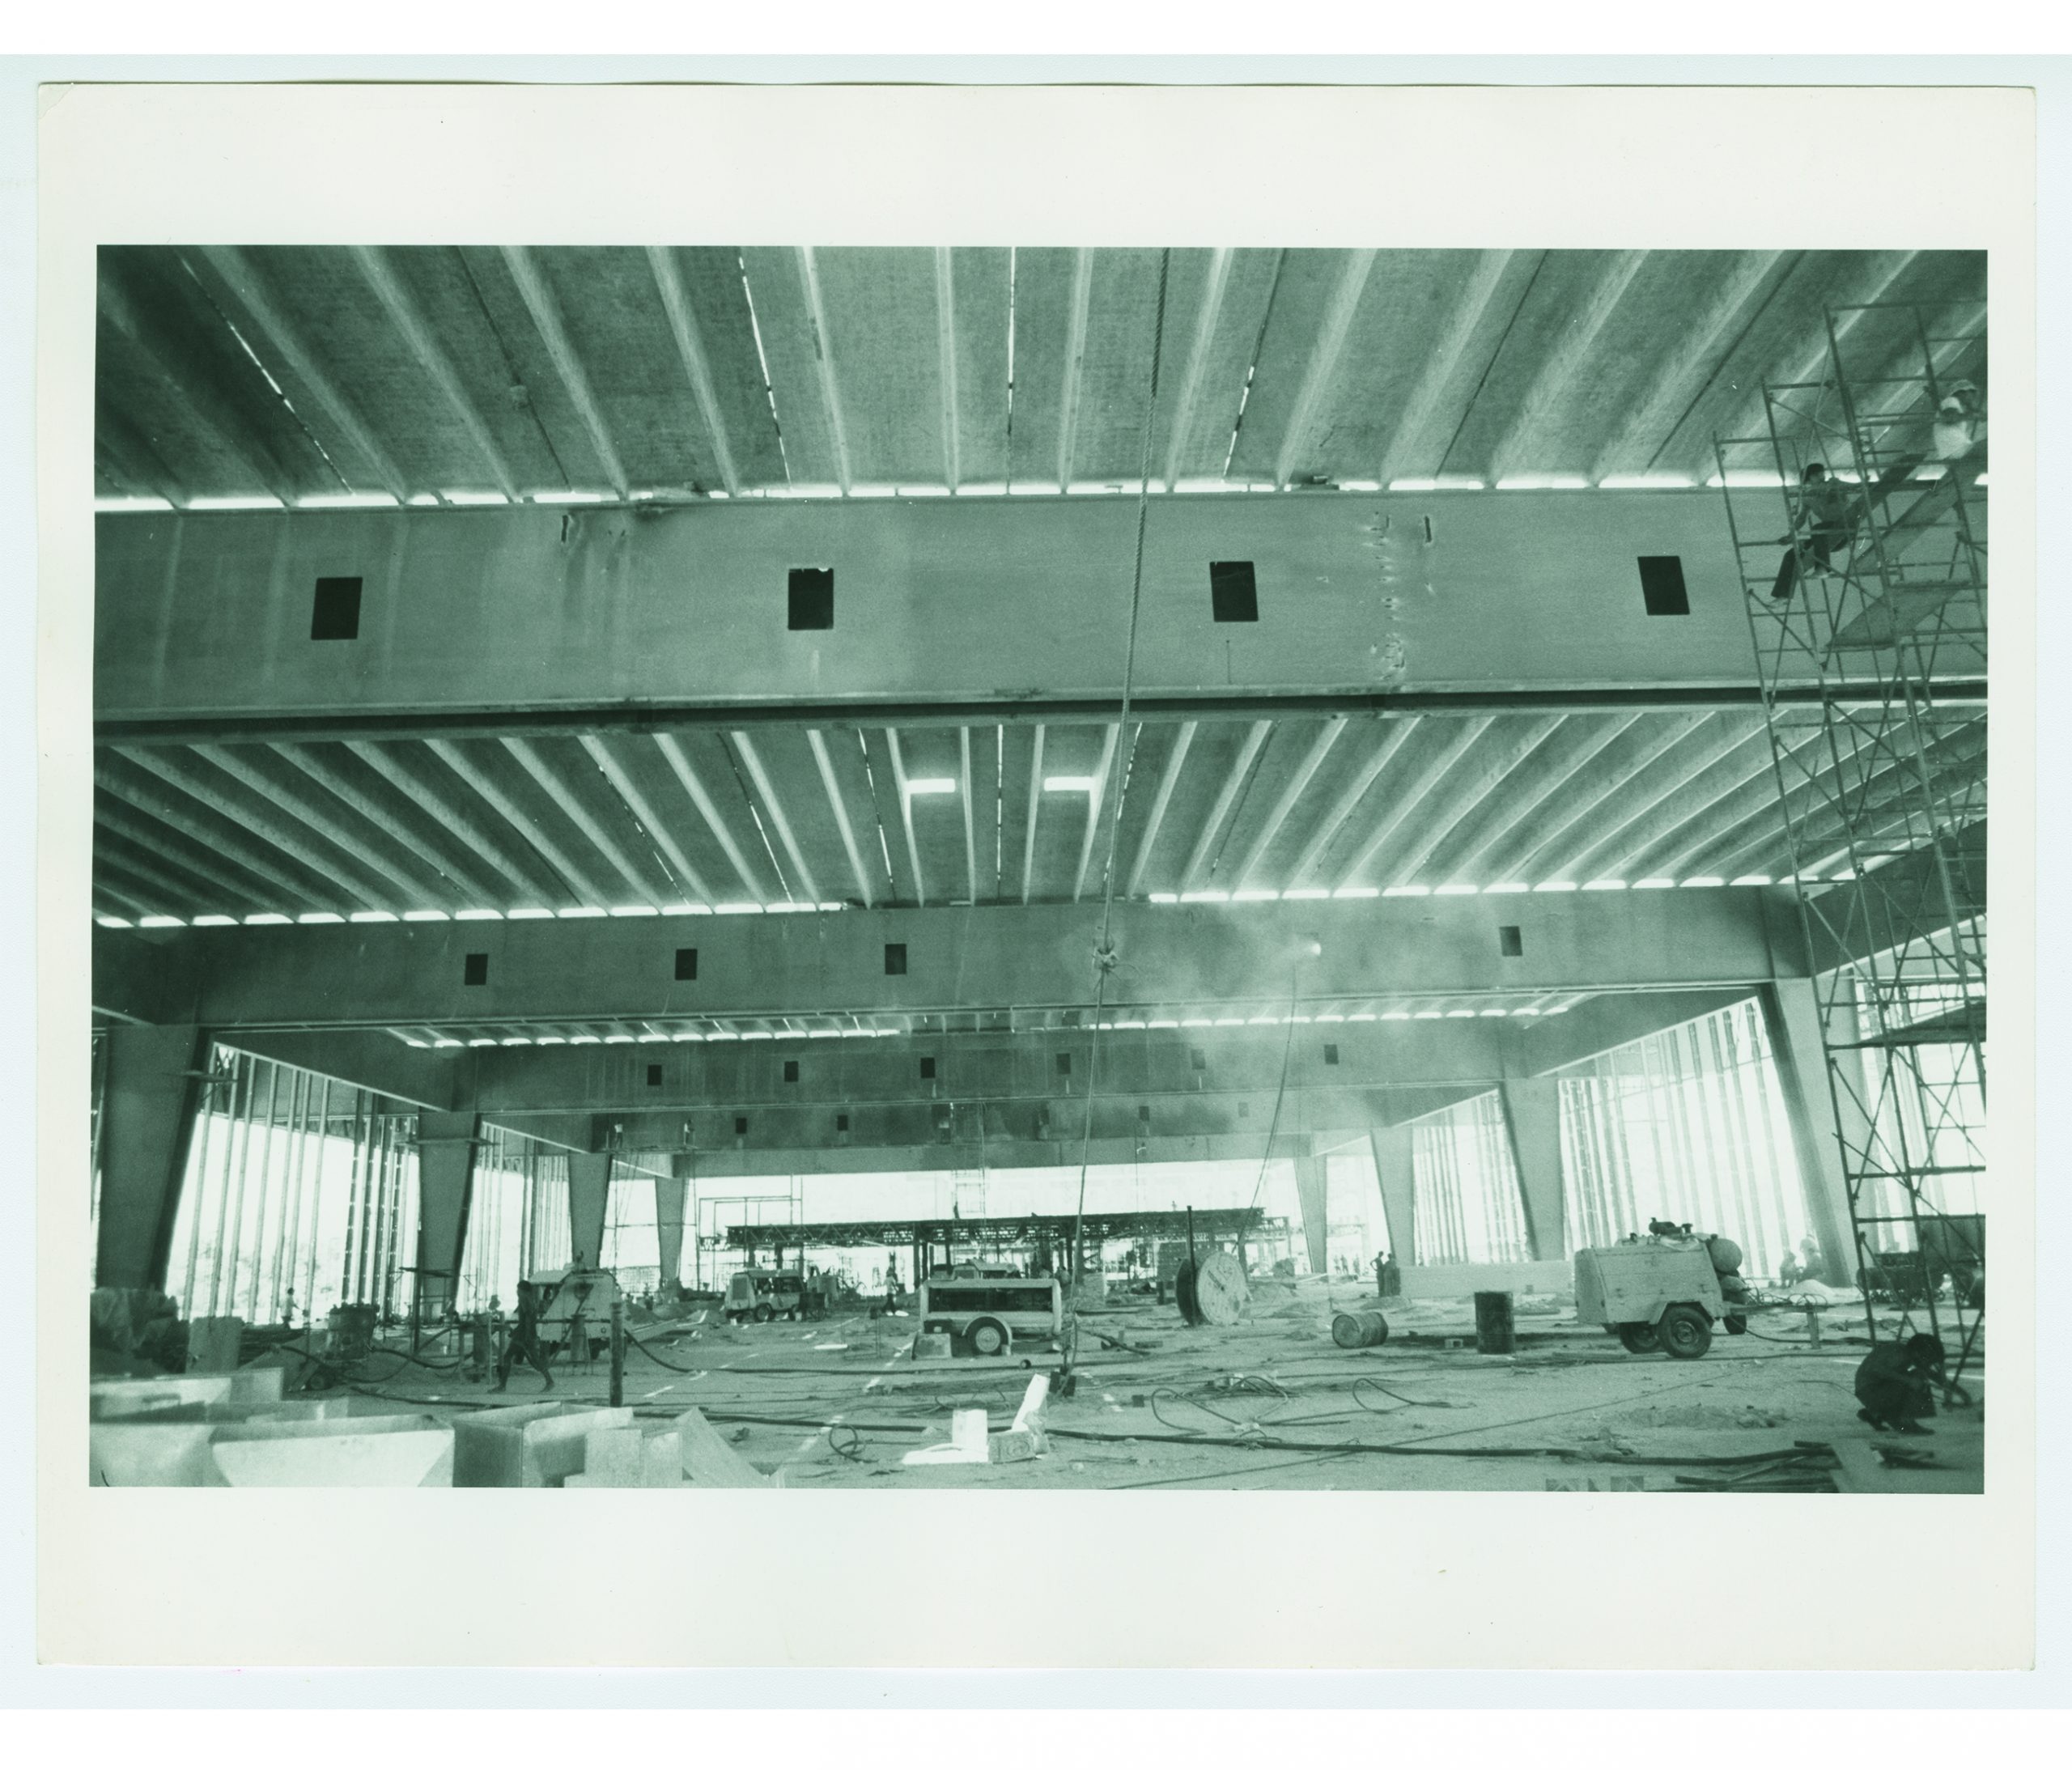 Cubiertas precoladas del salón principal en construcción. (AGP 72-100, AAM-FA/UNAM)